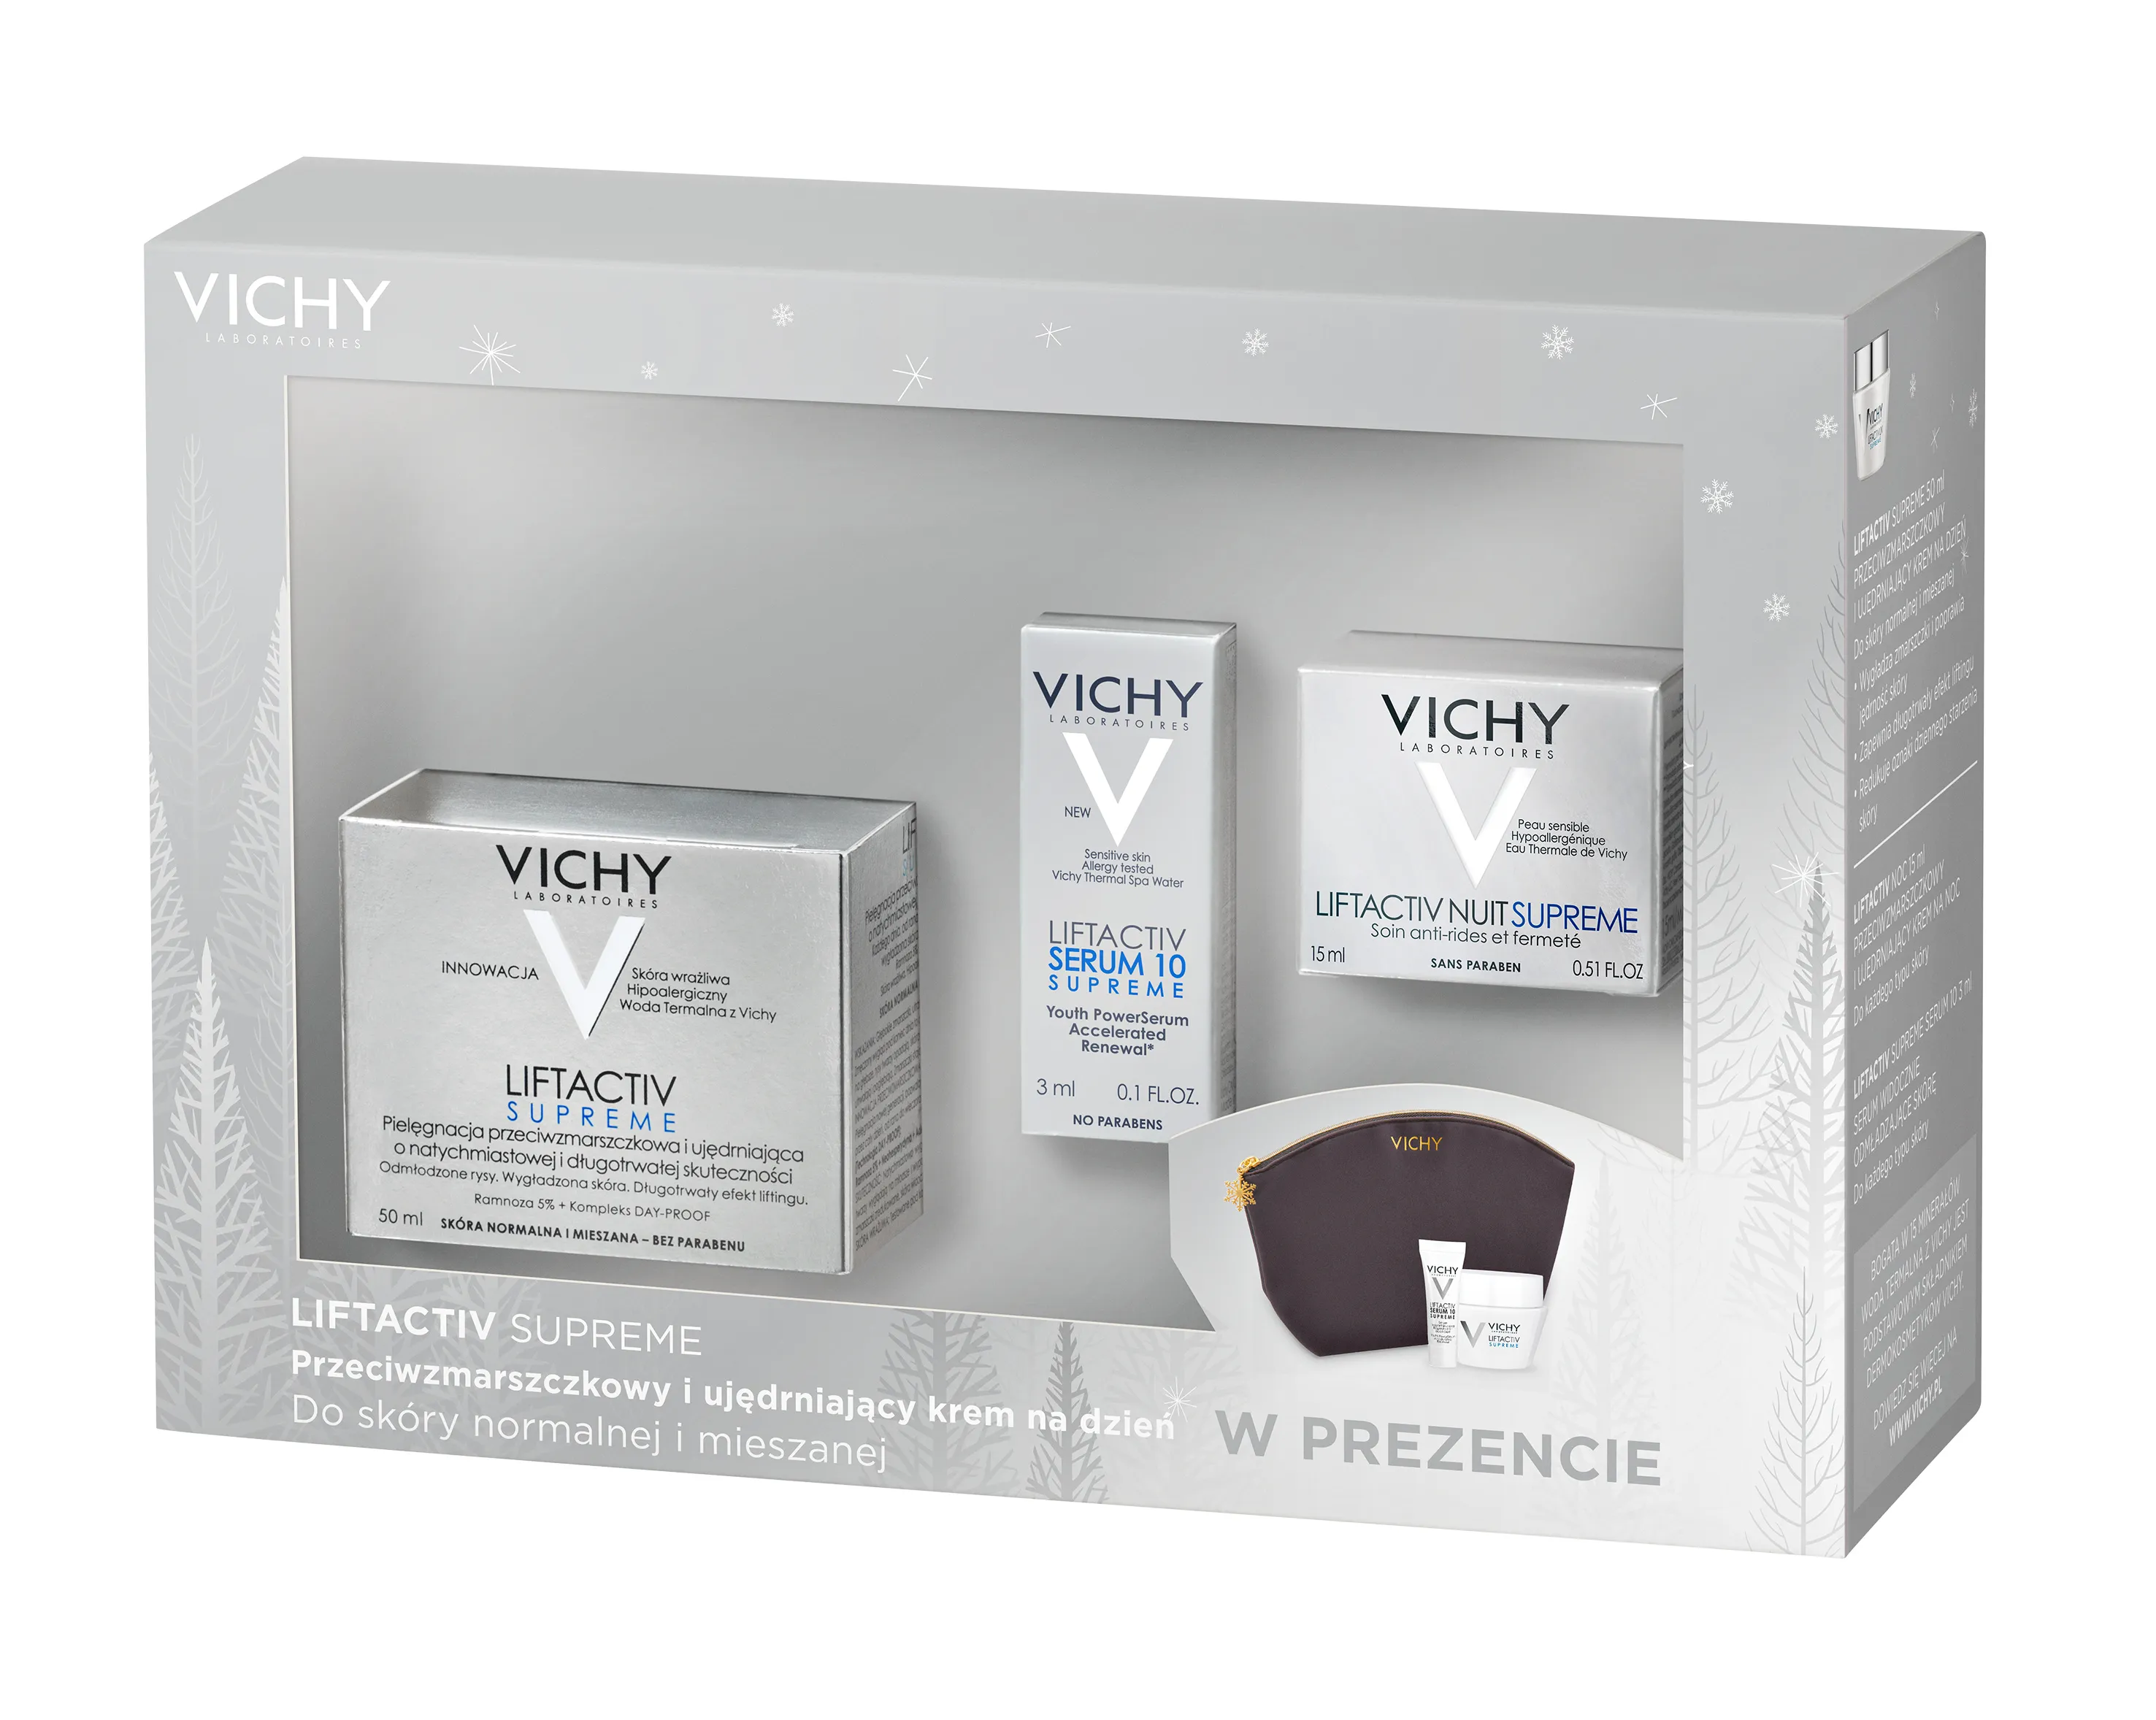 Vichy zestaw Liftactiv Supreme, krem, skóra normalna/mieszana, 50ml + krem na noc, 15ml + serum, 3ml + kosmetyczka